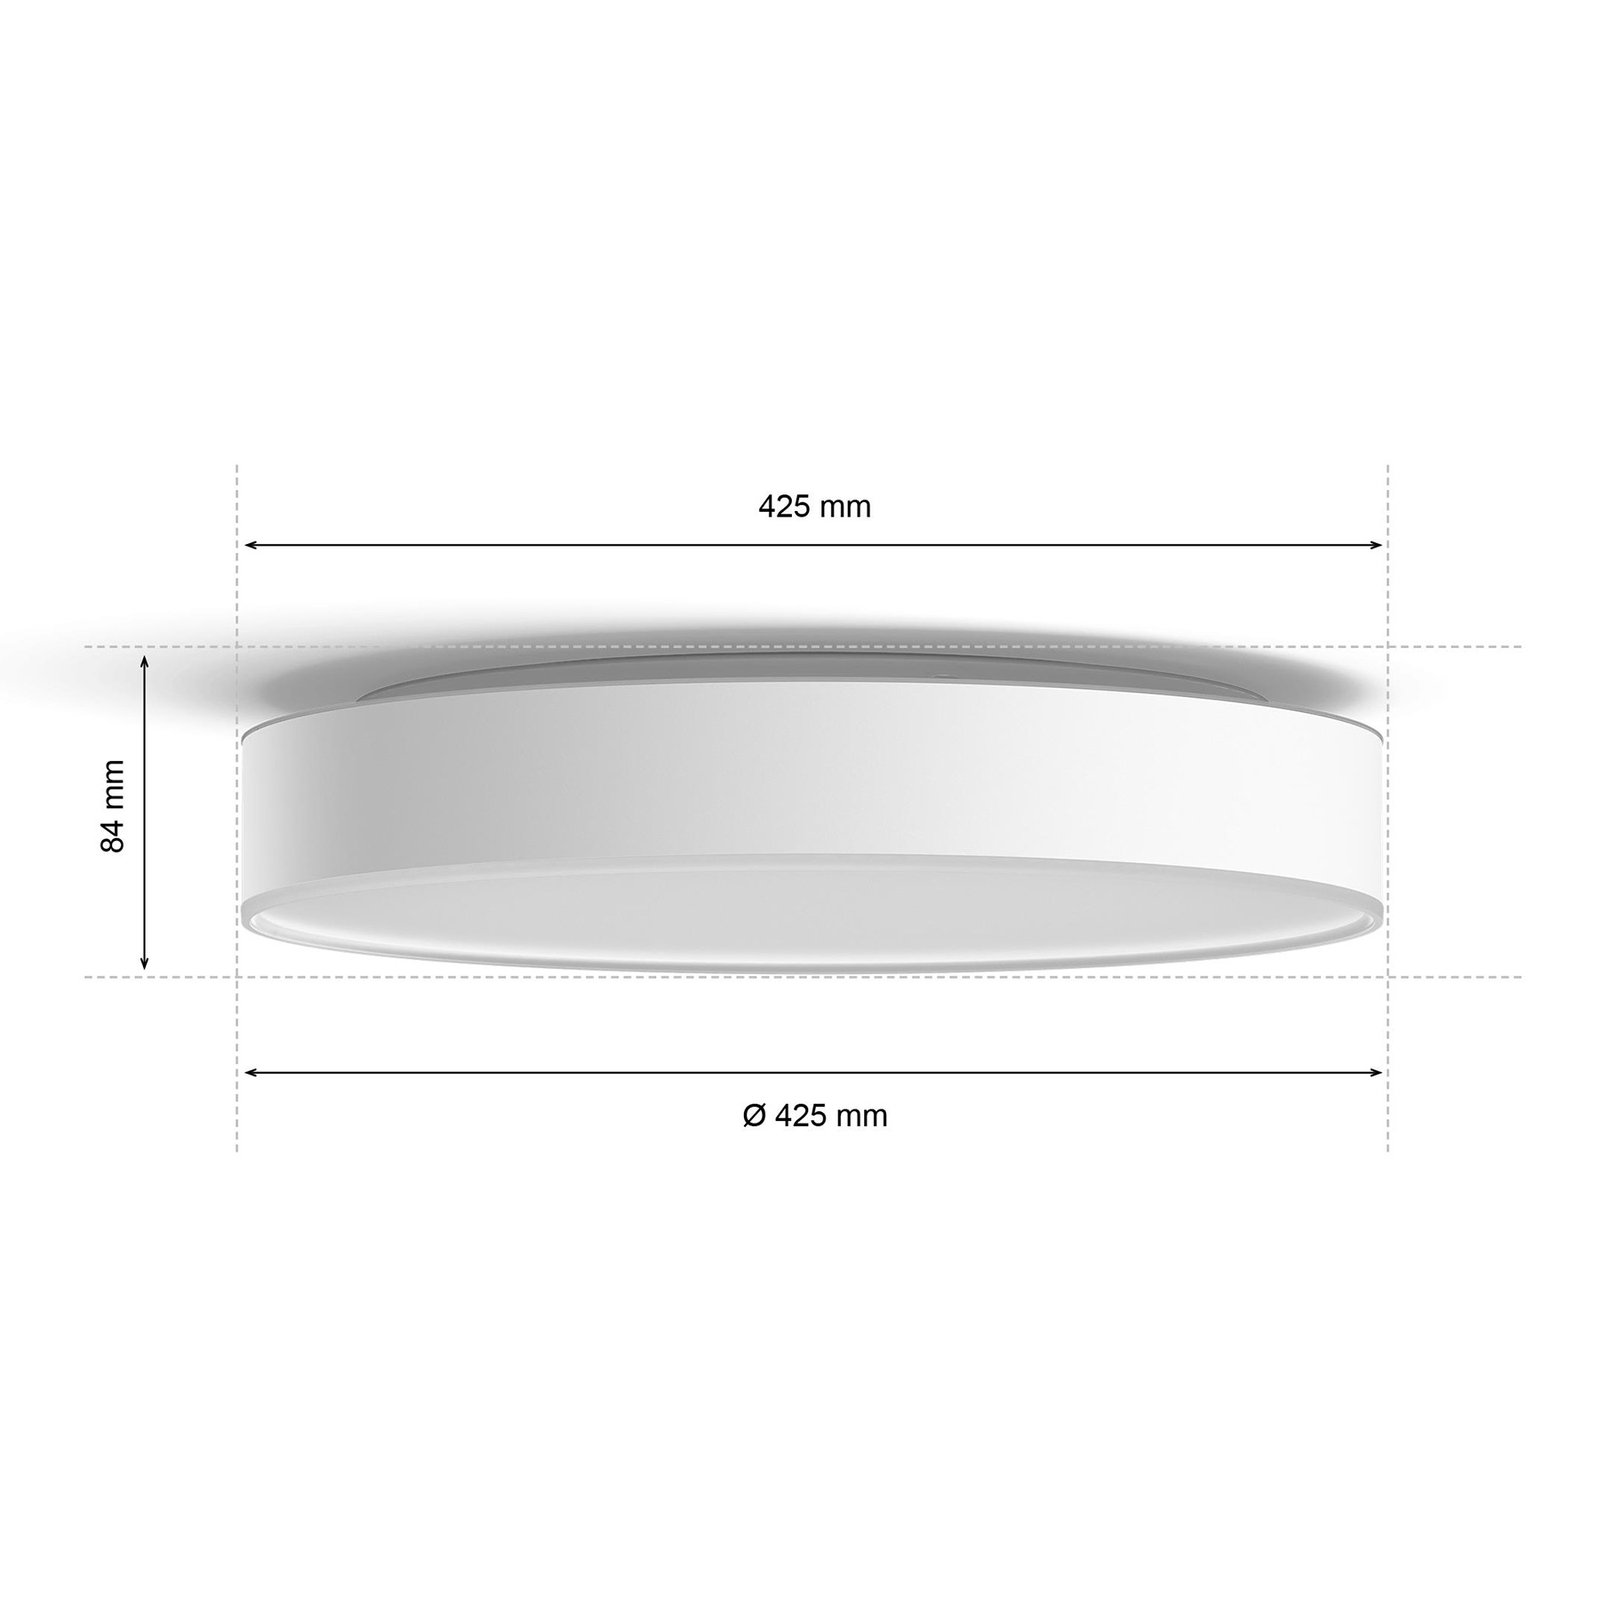 Philips Hue Devere LED-Deckenleuchte weiß, 42,5cm